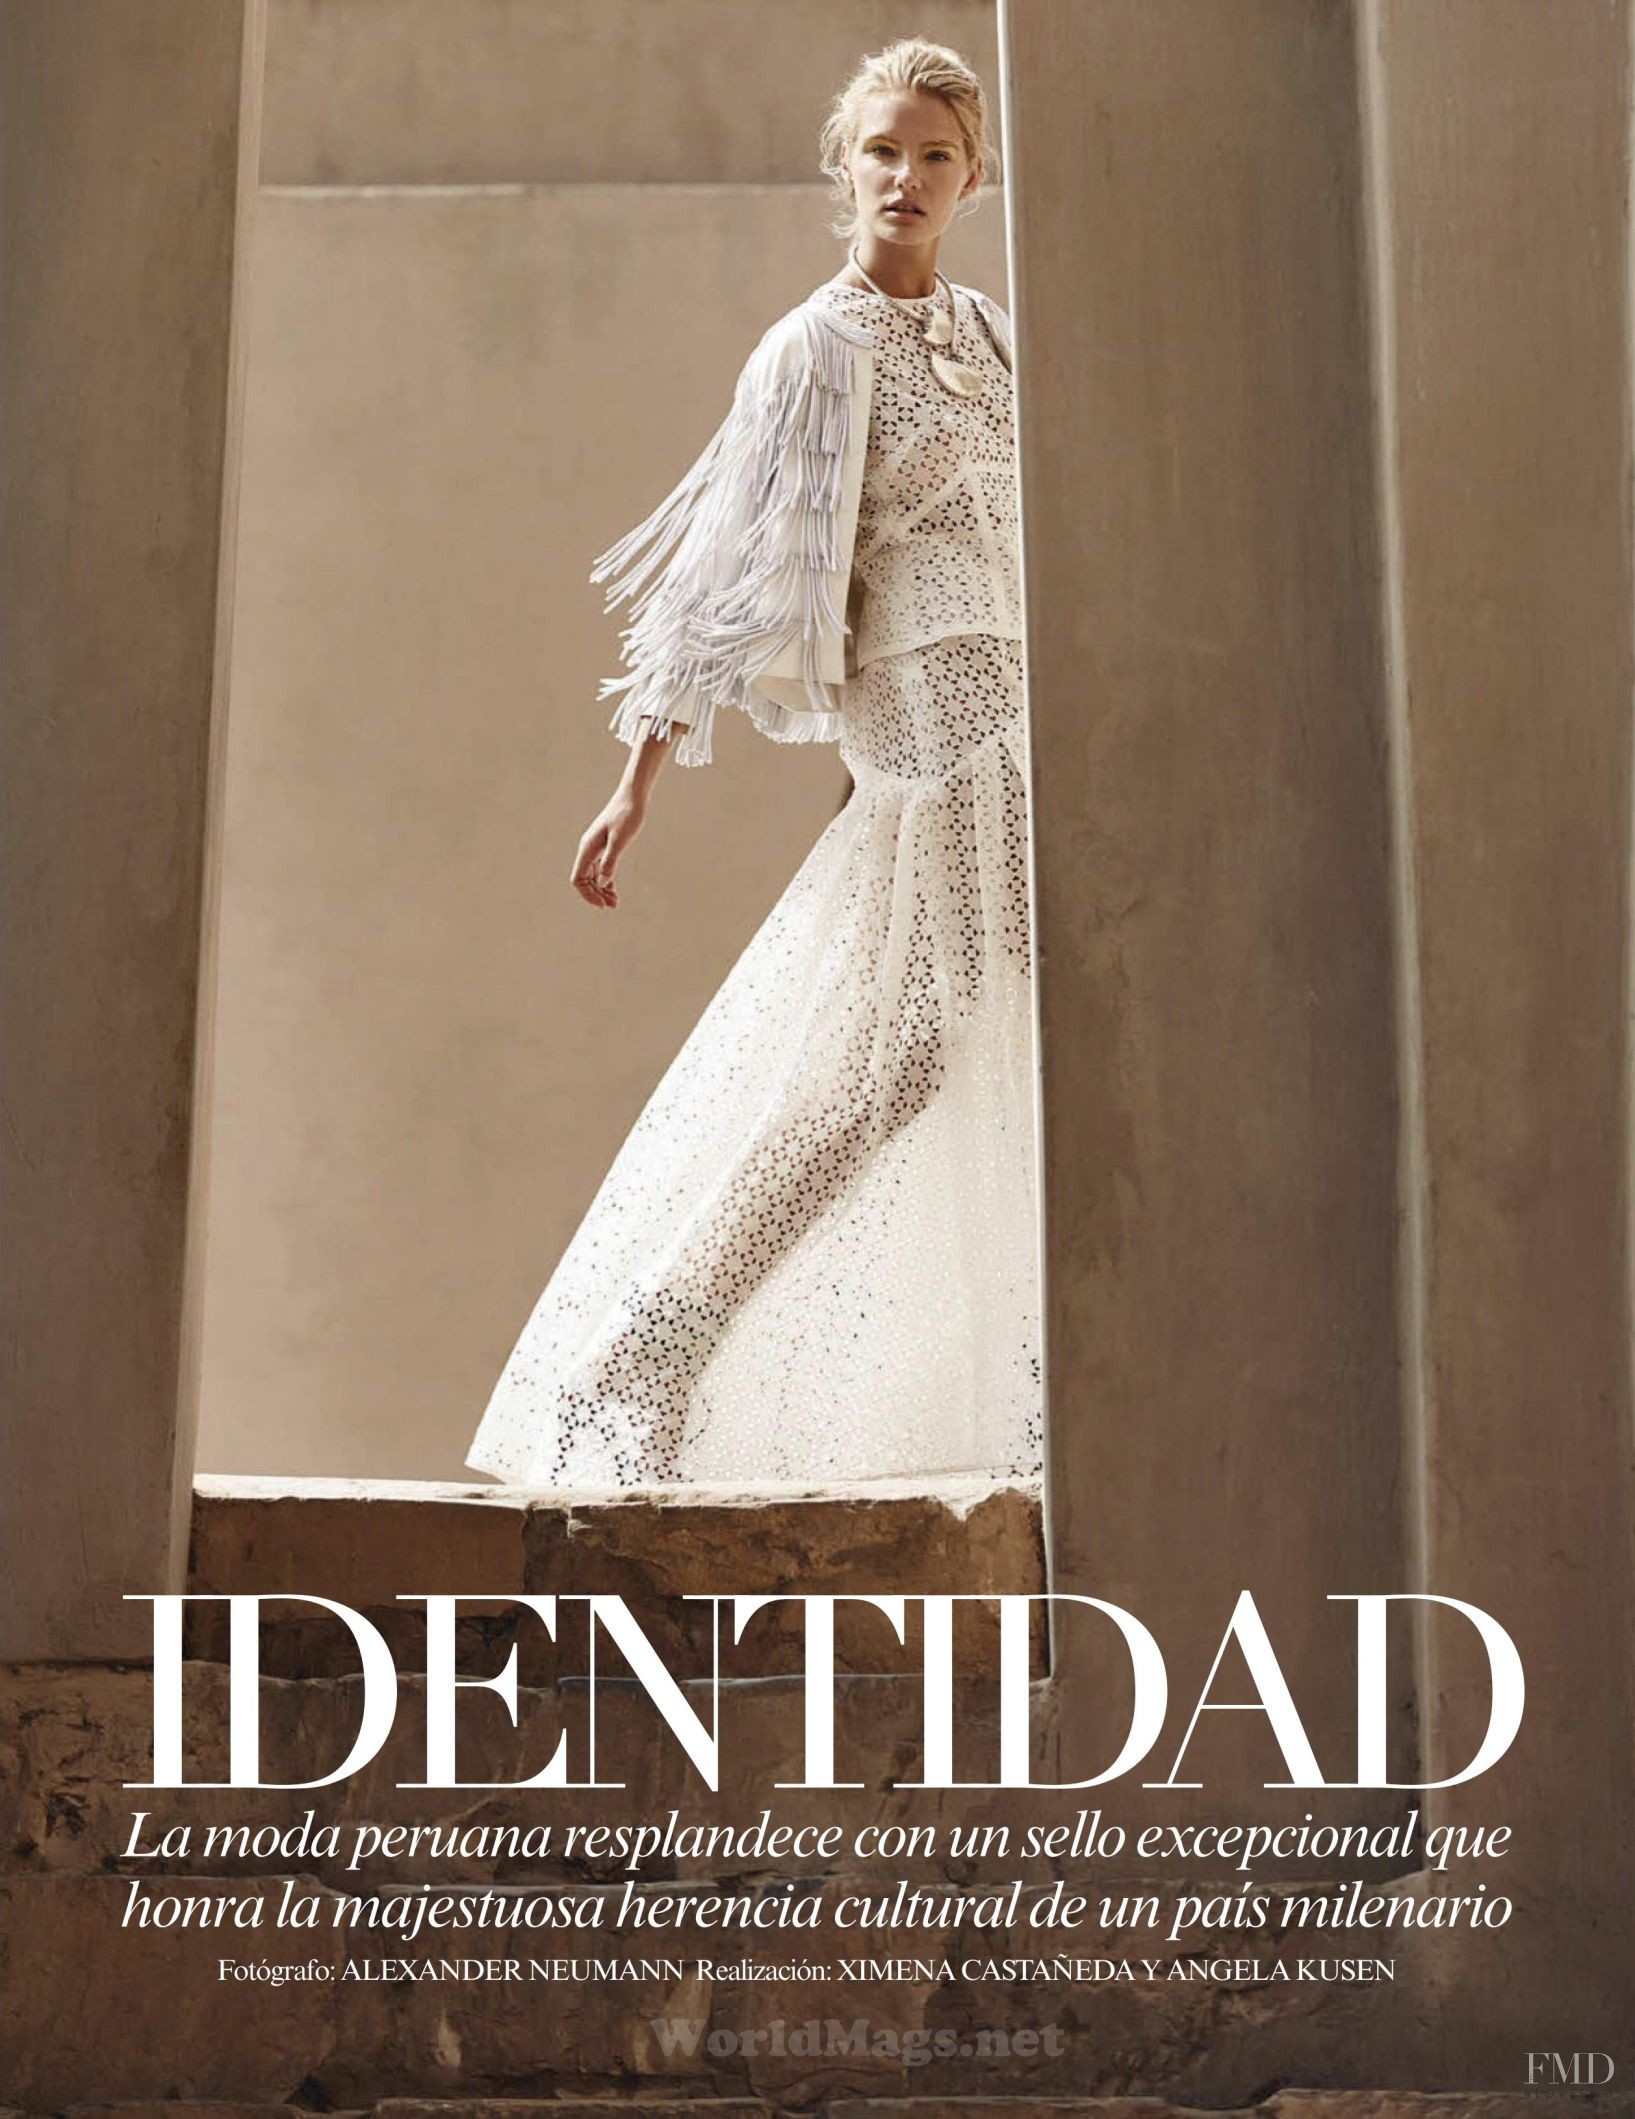 Identitiy in Vogue Mexico with Gintare Sudziute - (ID:21202) - Fashion ...